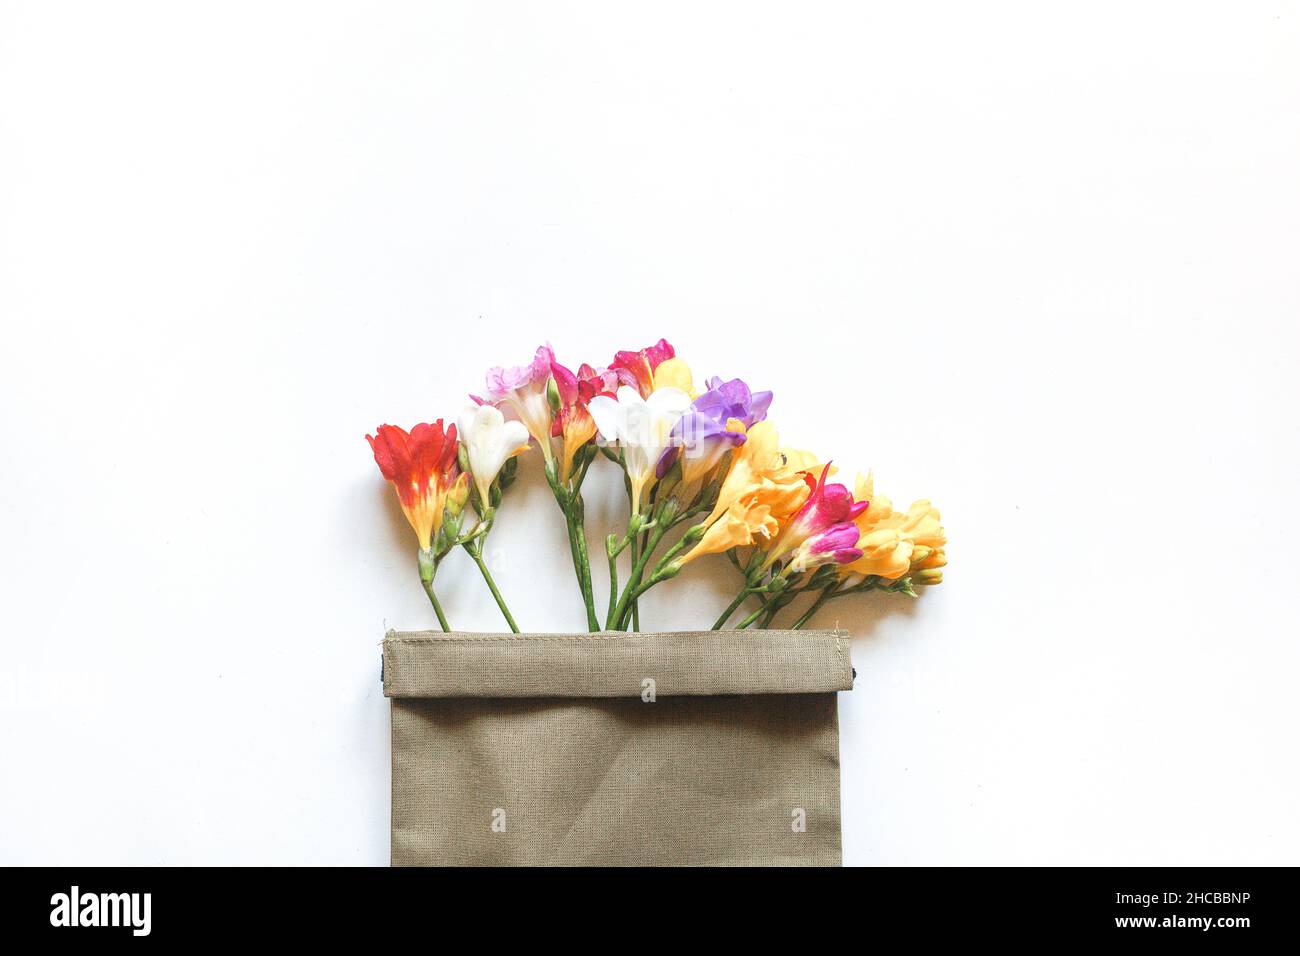 Flores multicolores de la Freesia y una ramita de flor de cerezo en una bolsa de lona sobre un fondo blanco. Plano, vista superior. Foto de stock